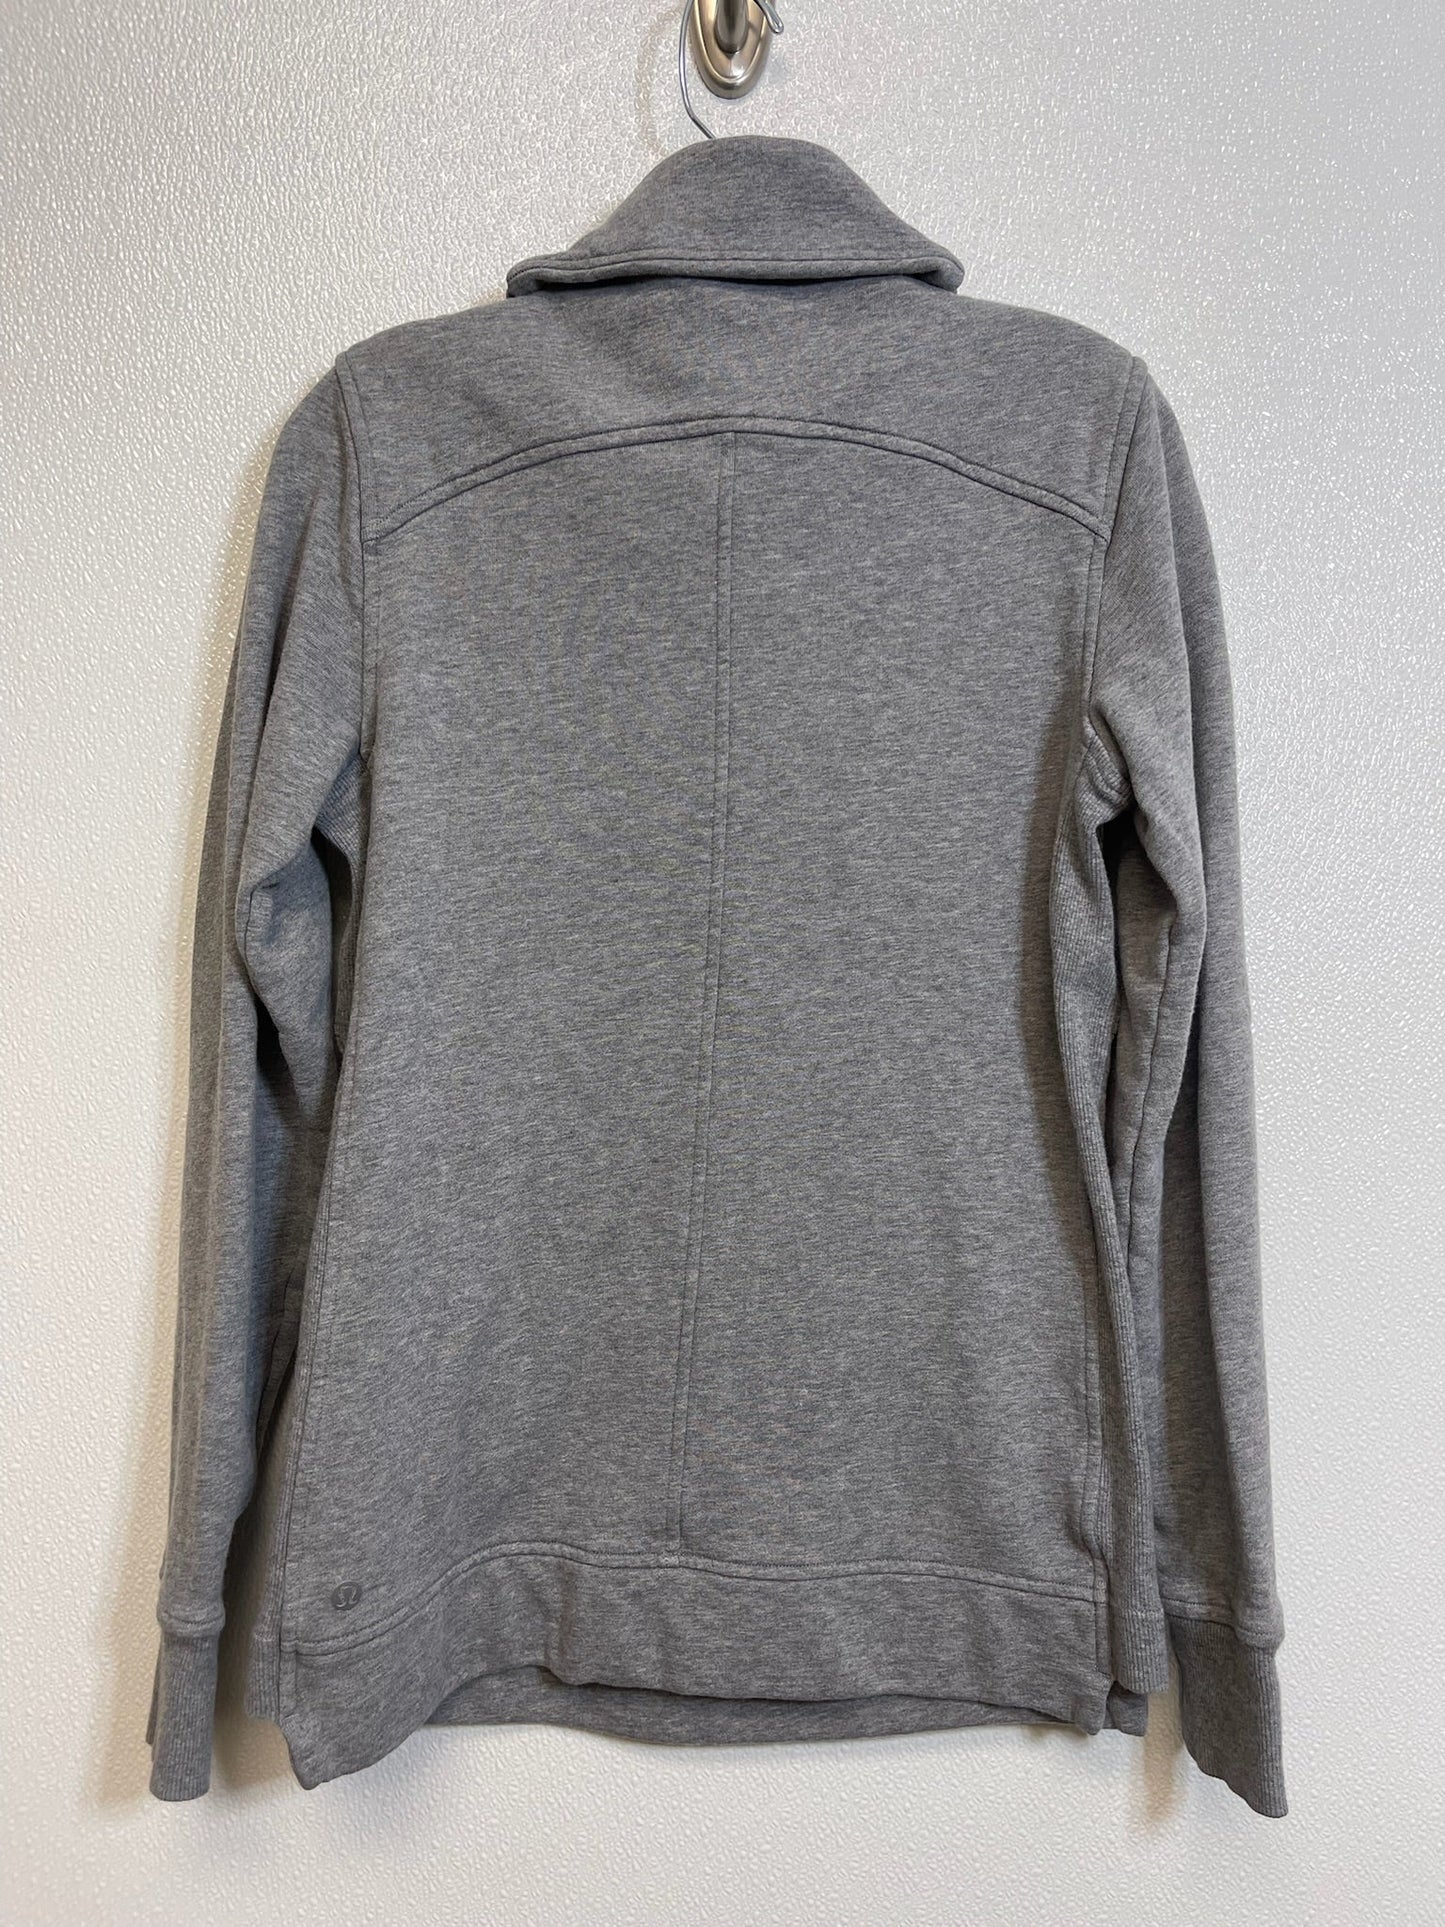 Grey Athletic Sweatshirt Crewneck Lululemon, Size 4